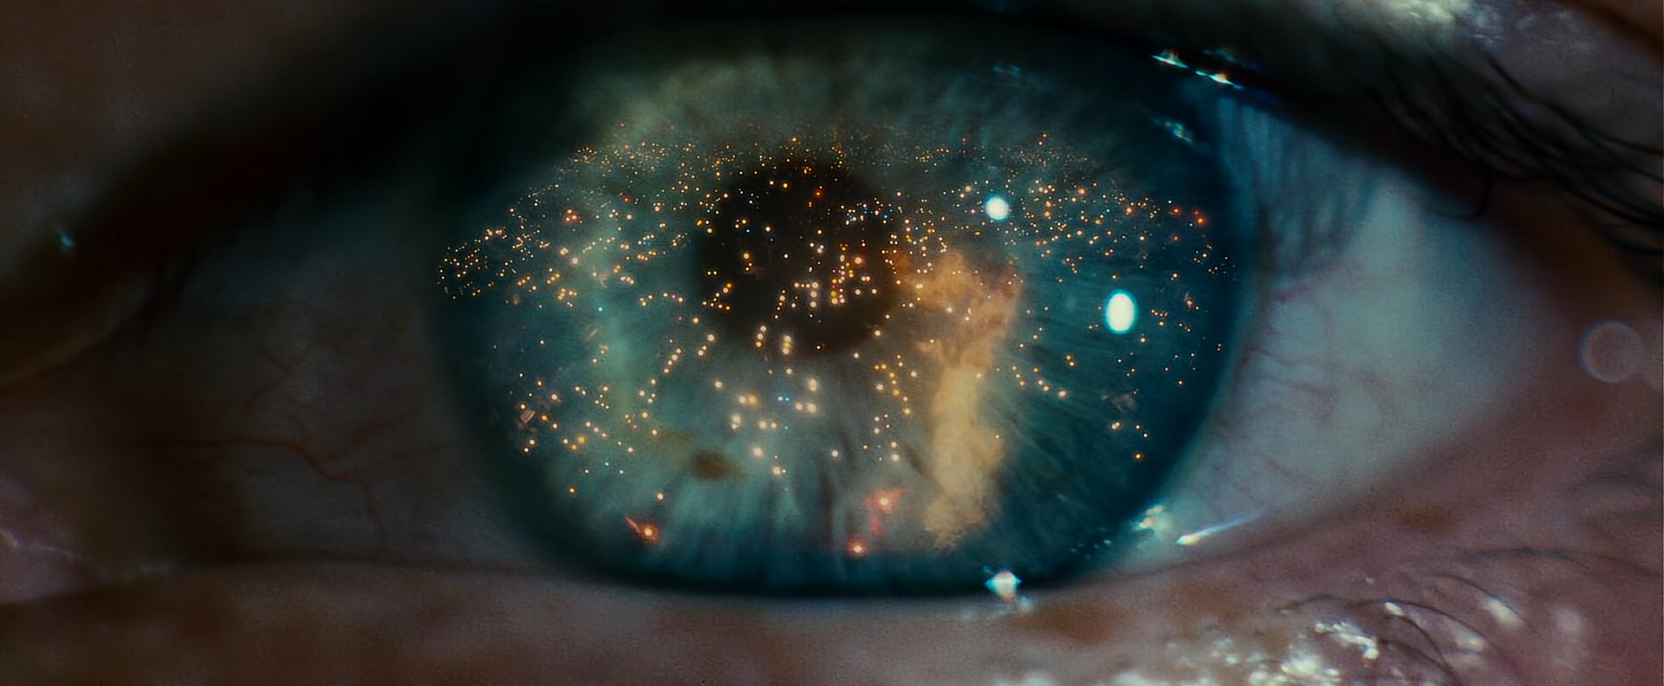 Eye Blade Runner